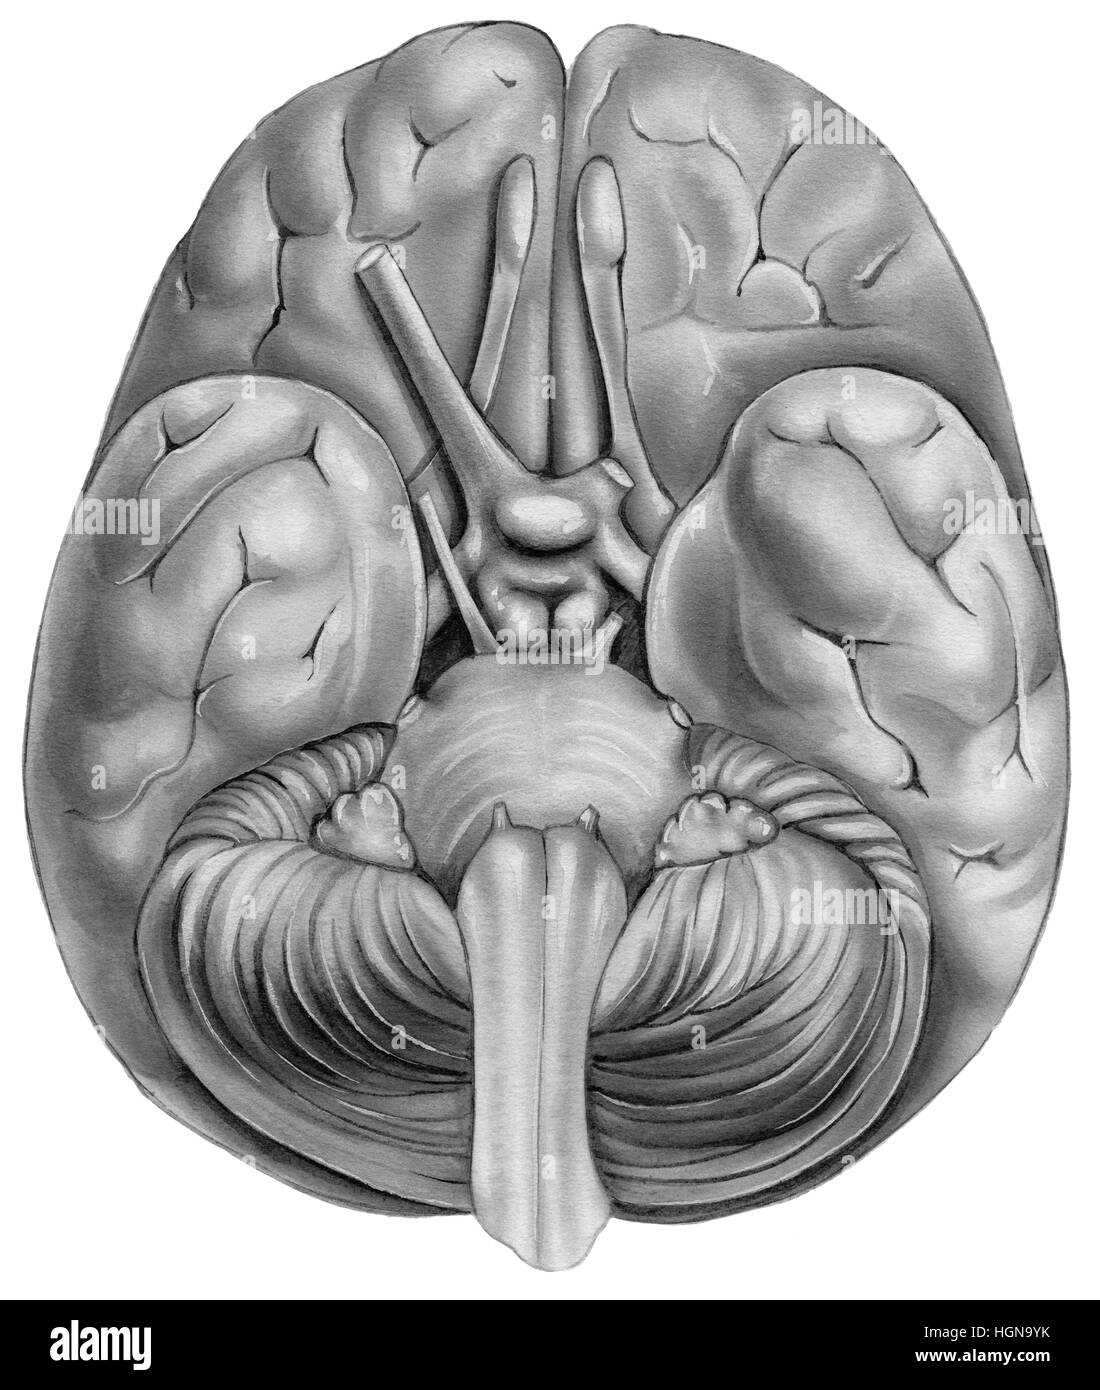 Cervello umano - Vista dal basso. Mostrate sono il lobo temporale,bulbo olfattivo,lobo frontale, pons,medulla regione,cervelletto,piramide,chiasma,nervo ottico,olfacto Foto Stock